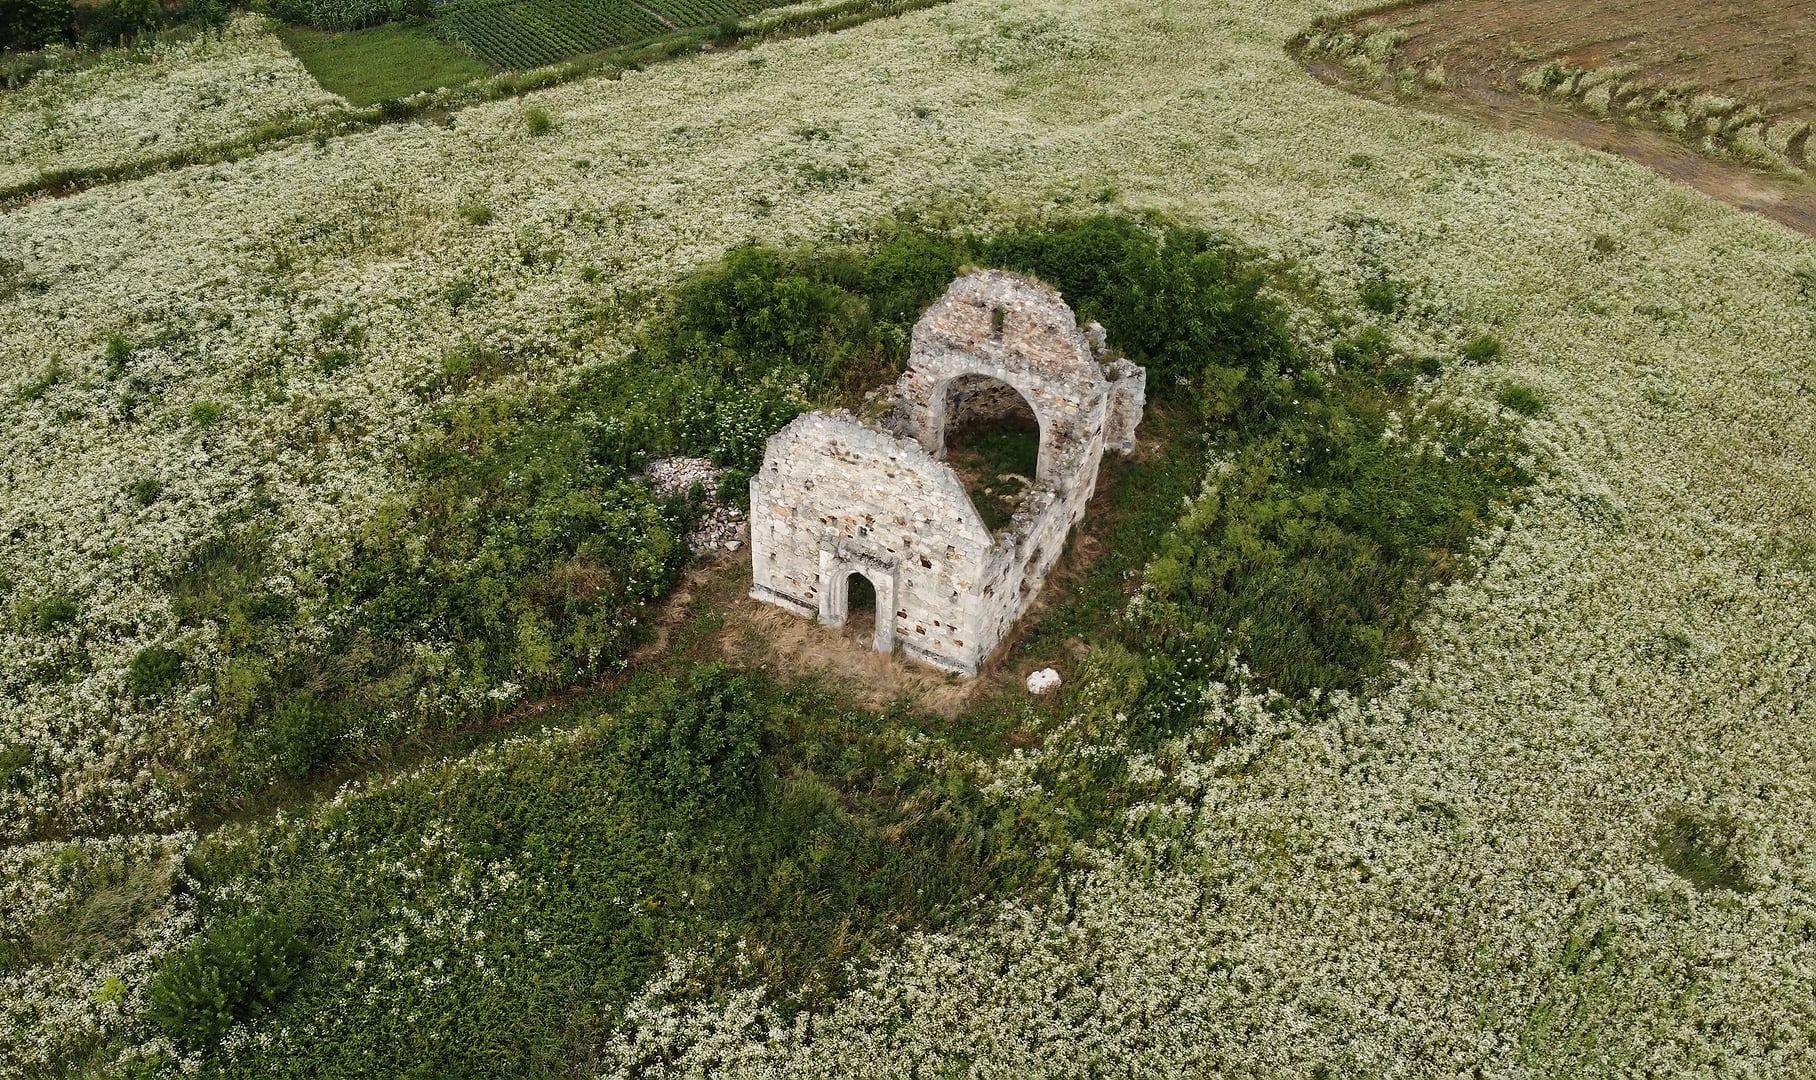 Истинная закакарпатская готика - бывшая приходская церковь ныне несоперентной деревни Мале-Мужиево под Ореховом.